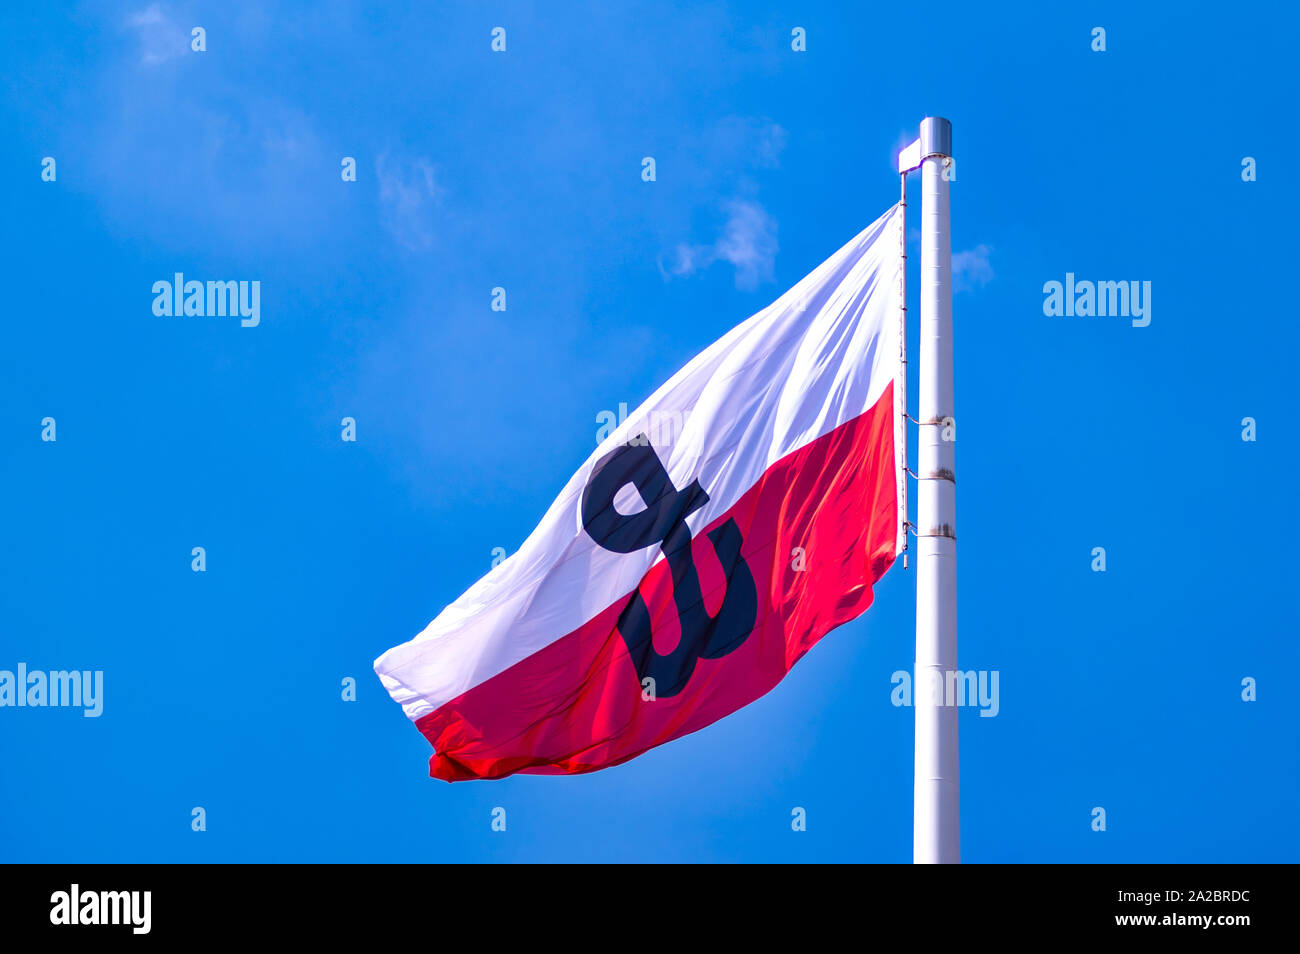 Polen, Warschau: Weiße und rote Flagge der Republik Polen mit dem Emblem des polnischen Untergrundstaates und seiner Heimatarmee. Stockfoto